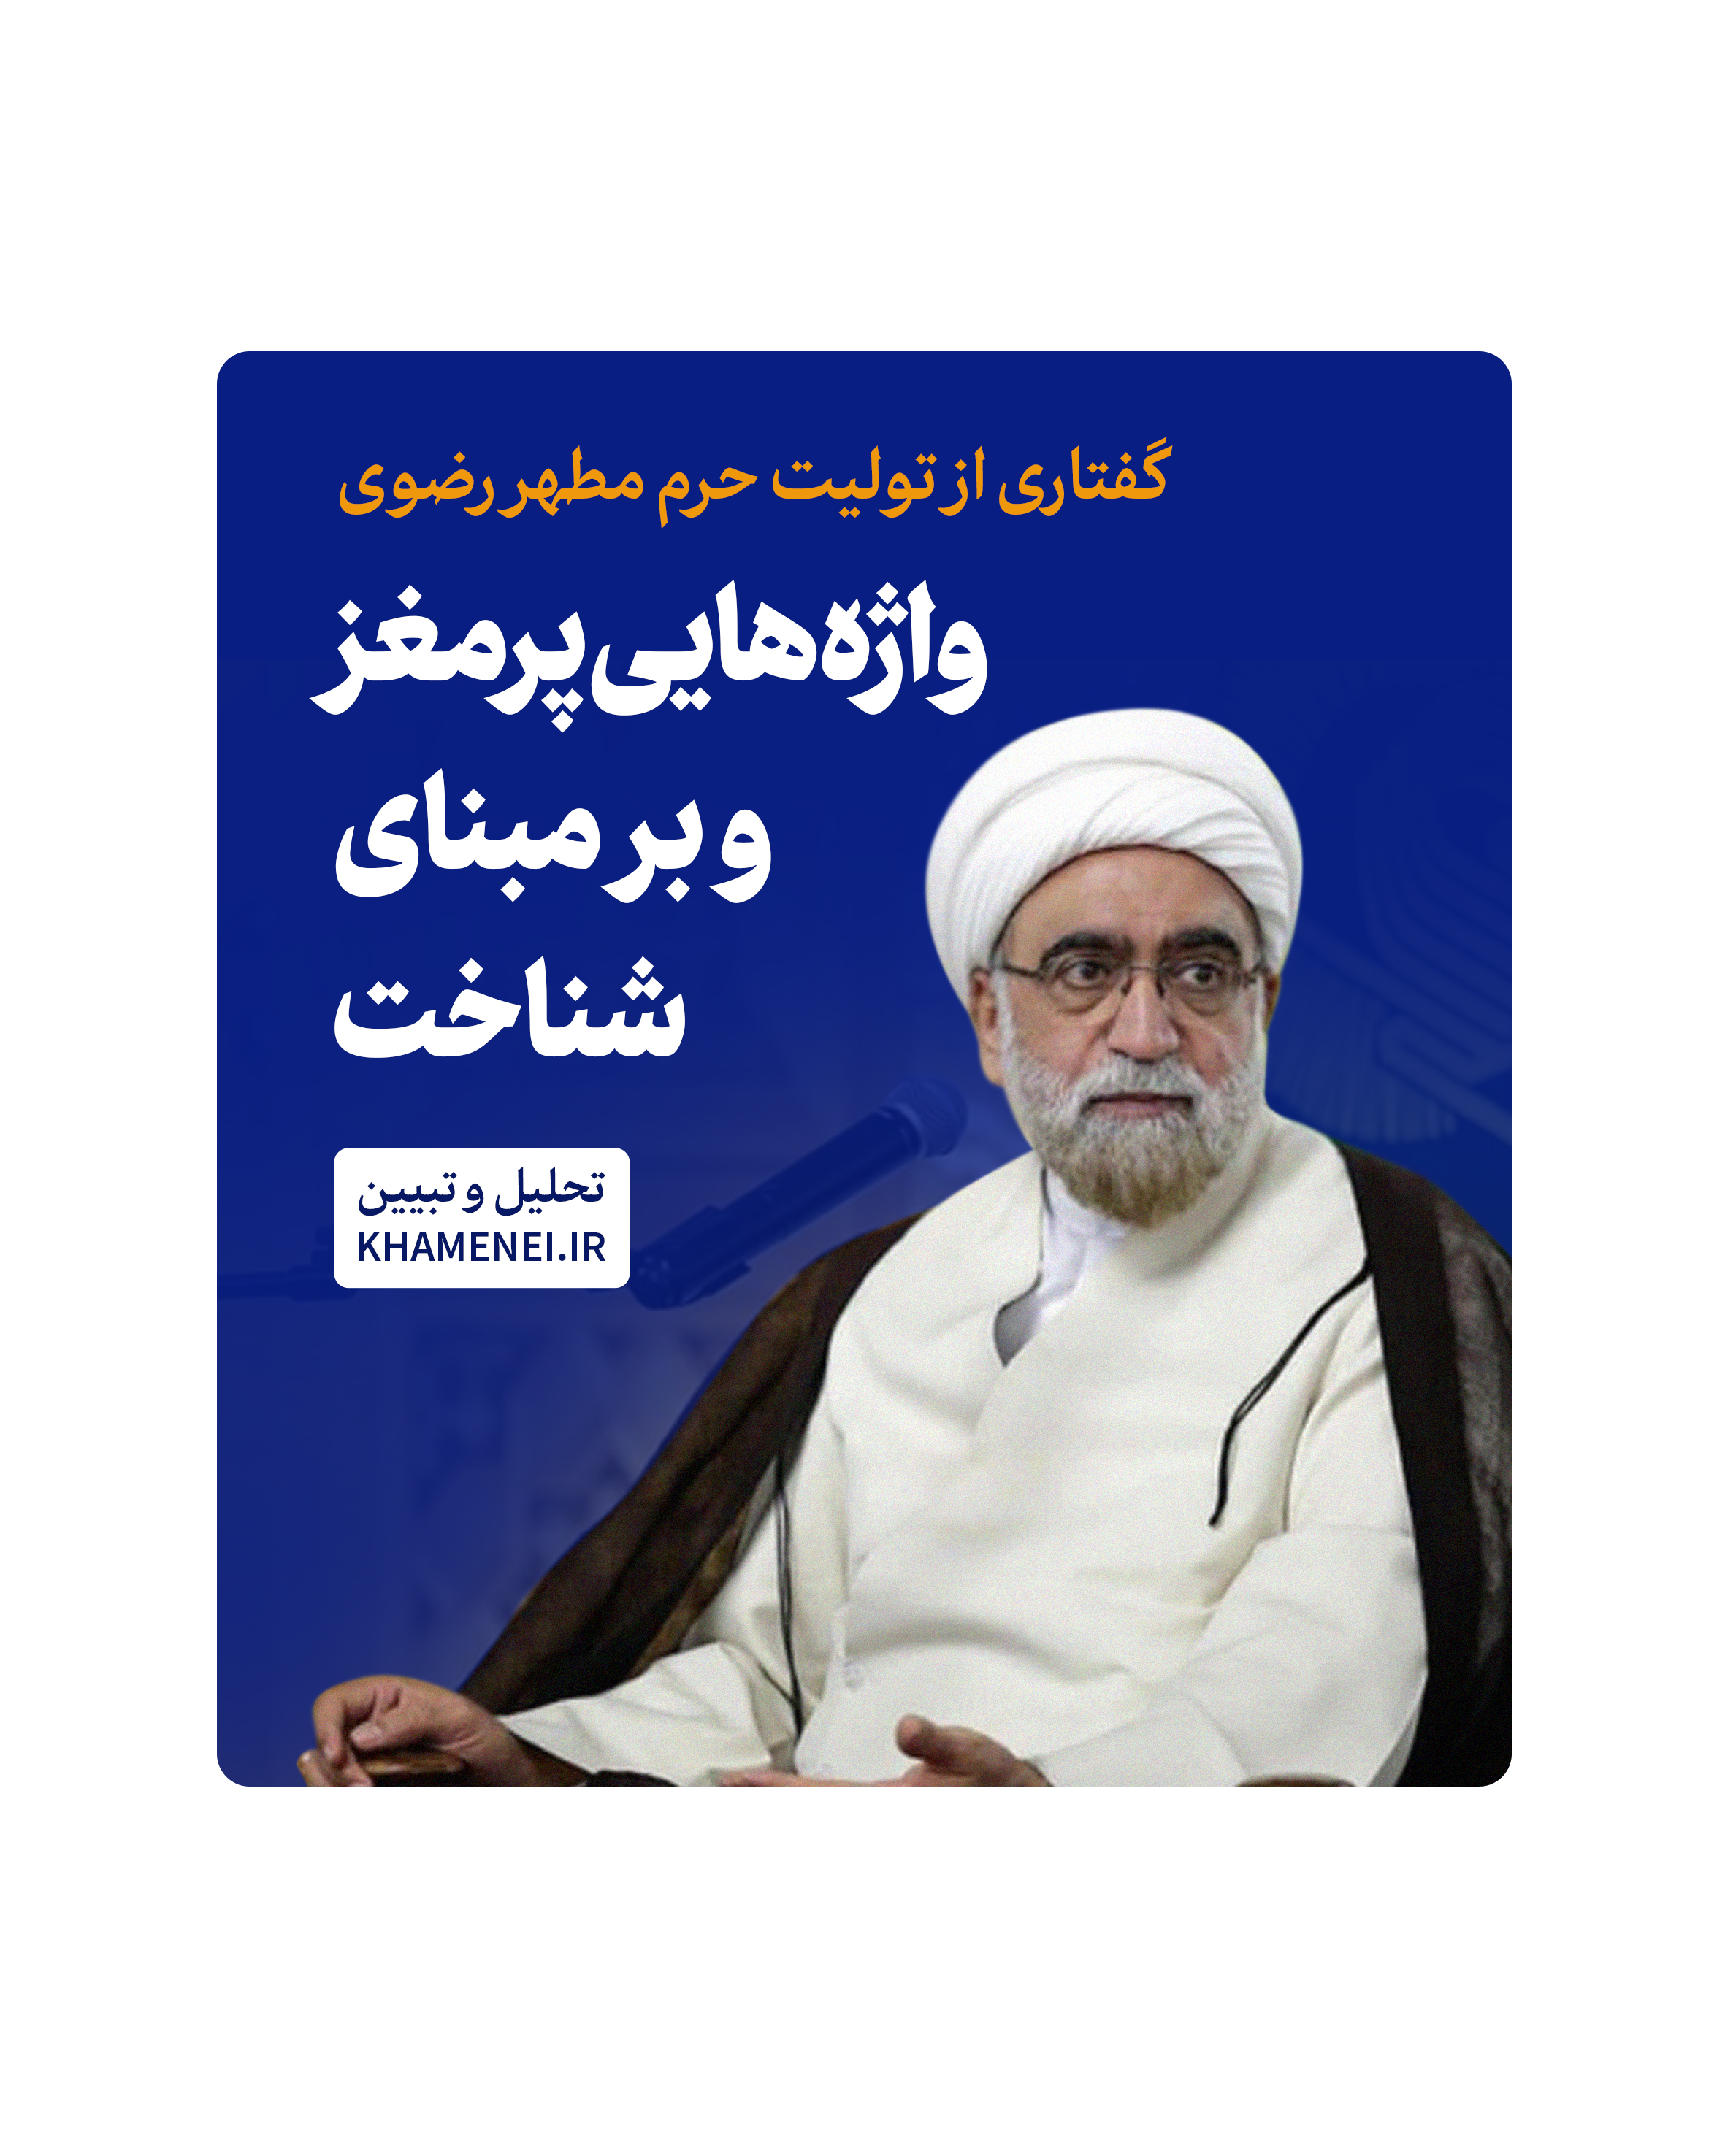 https://idc0-cdn0.khamenei.ir/ndata/news/49942/marvi.jpg